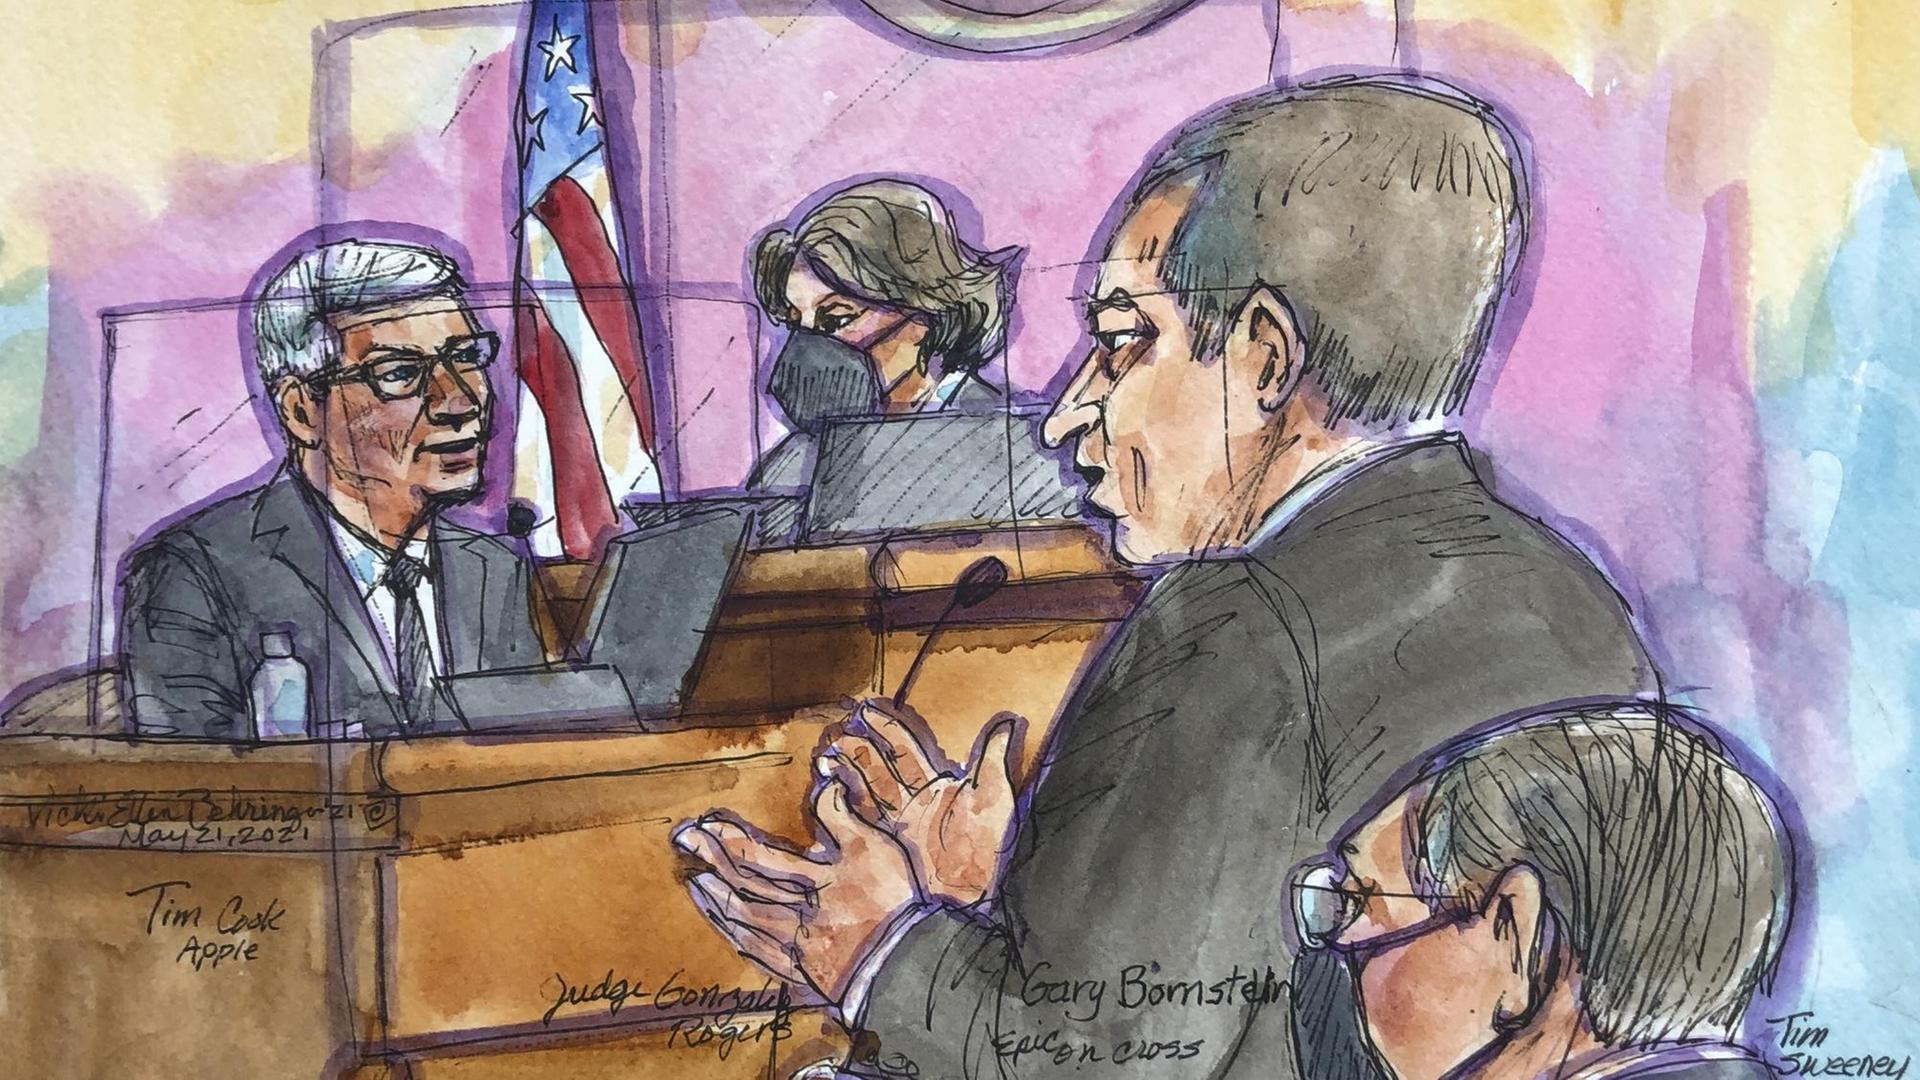 Die farbige Zeichnung aus dem Gerichtssaal im kalfornischen San Ramon zeigt Apple-Chef Tim Cook links, während ihn Epic Games-Anwalt Gary Bornstein am 21. Mai befragt. Im Hintergrund die Richterin neben einer US-Flagge.